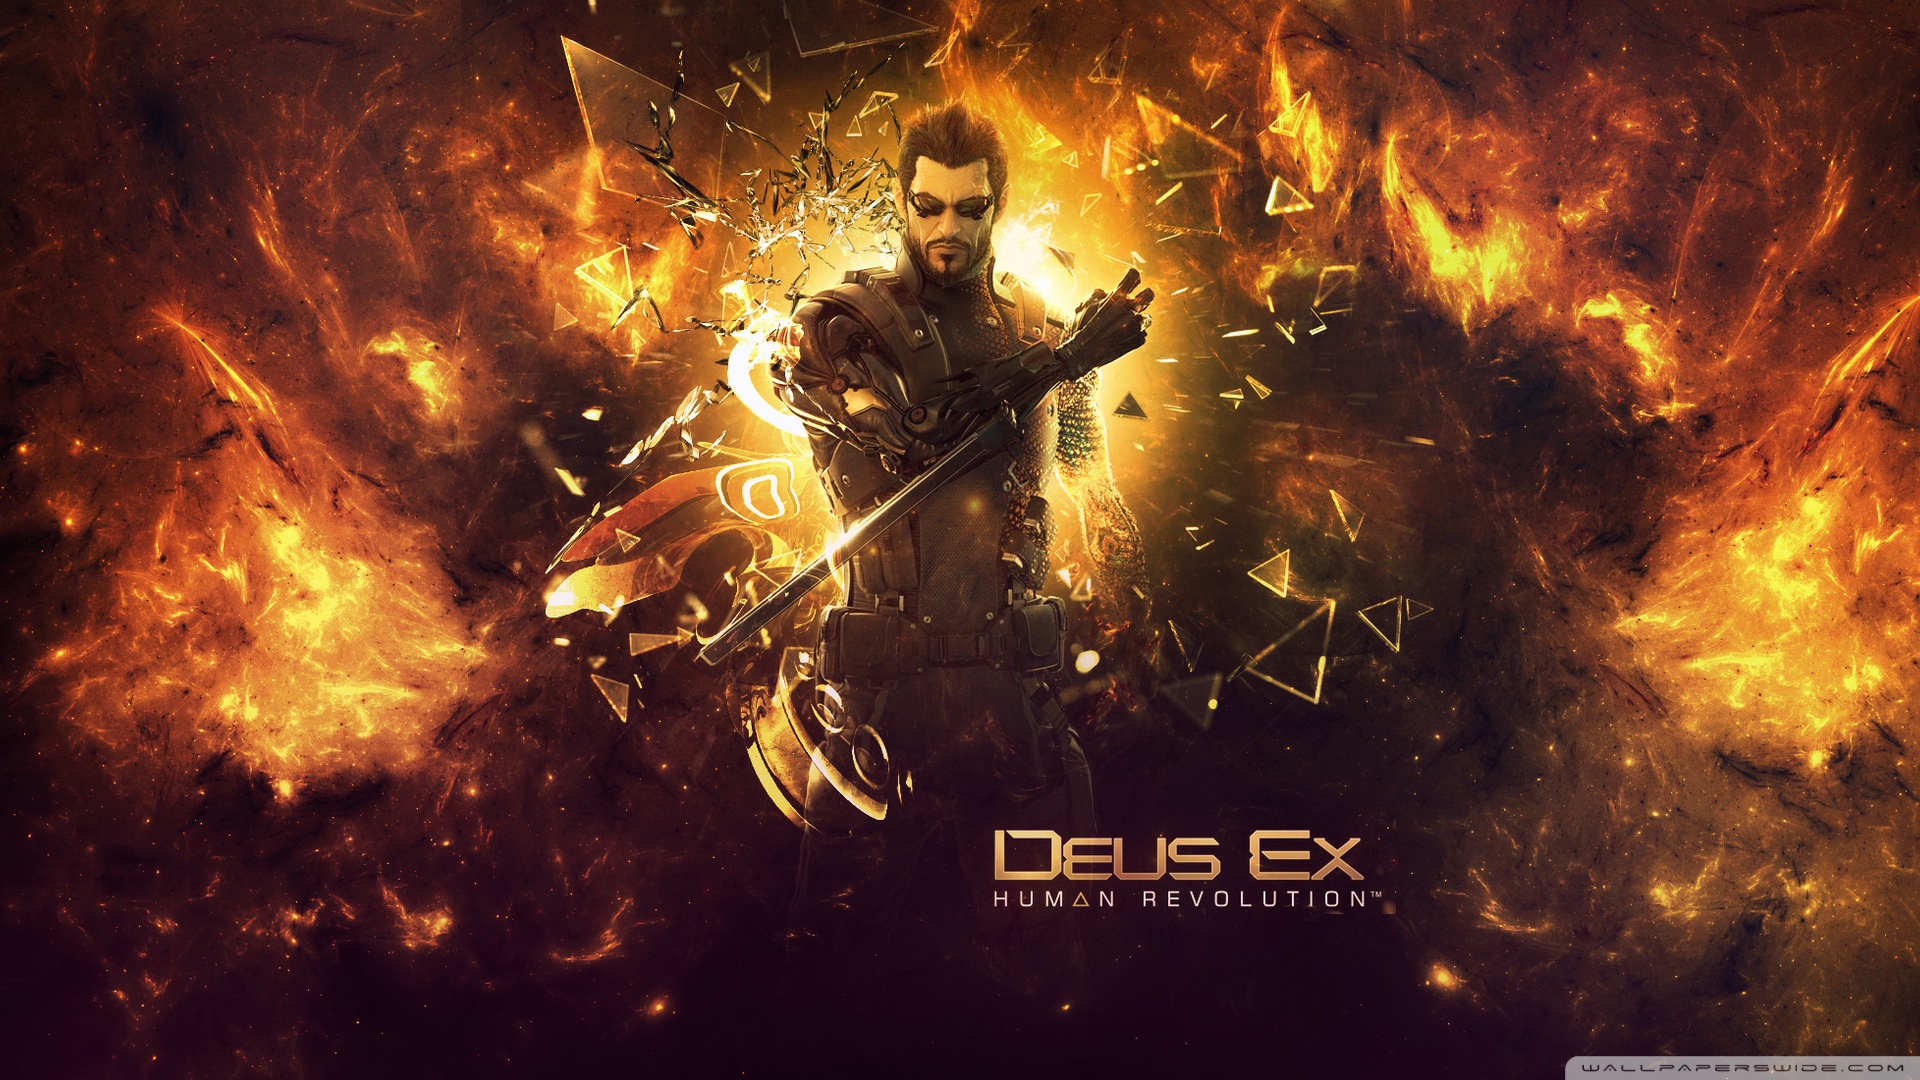 Download Deus Ex Human Revolution 2 Wallpaper 1920x1080 ...